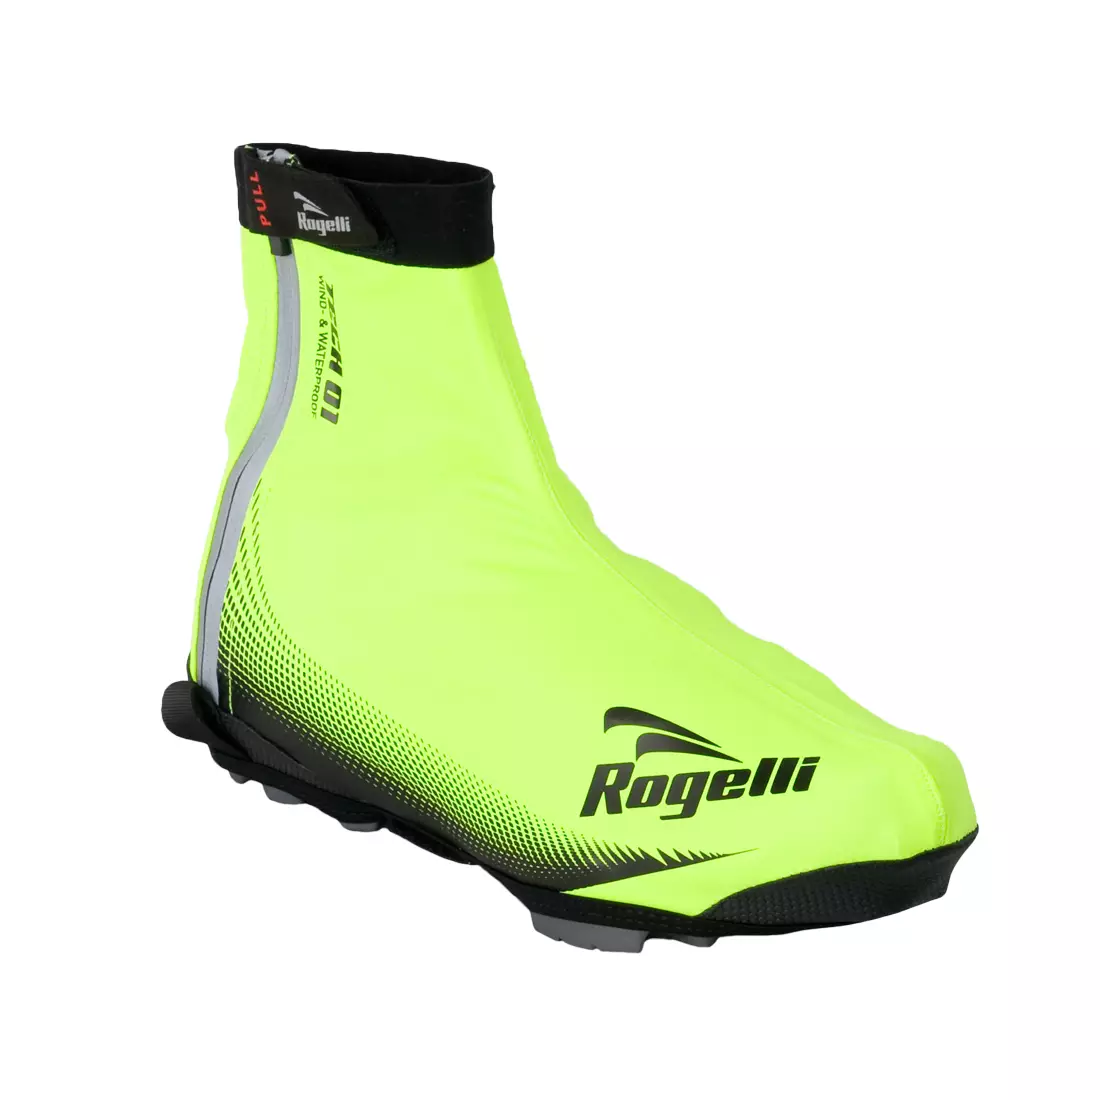 ROGELLI FIANDREX - protektorok kerékpáros cipőhöz, szín: Fluor